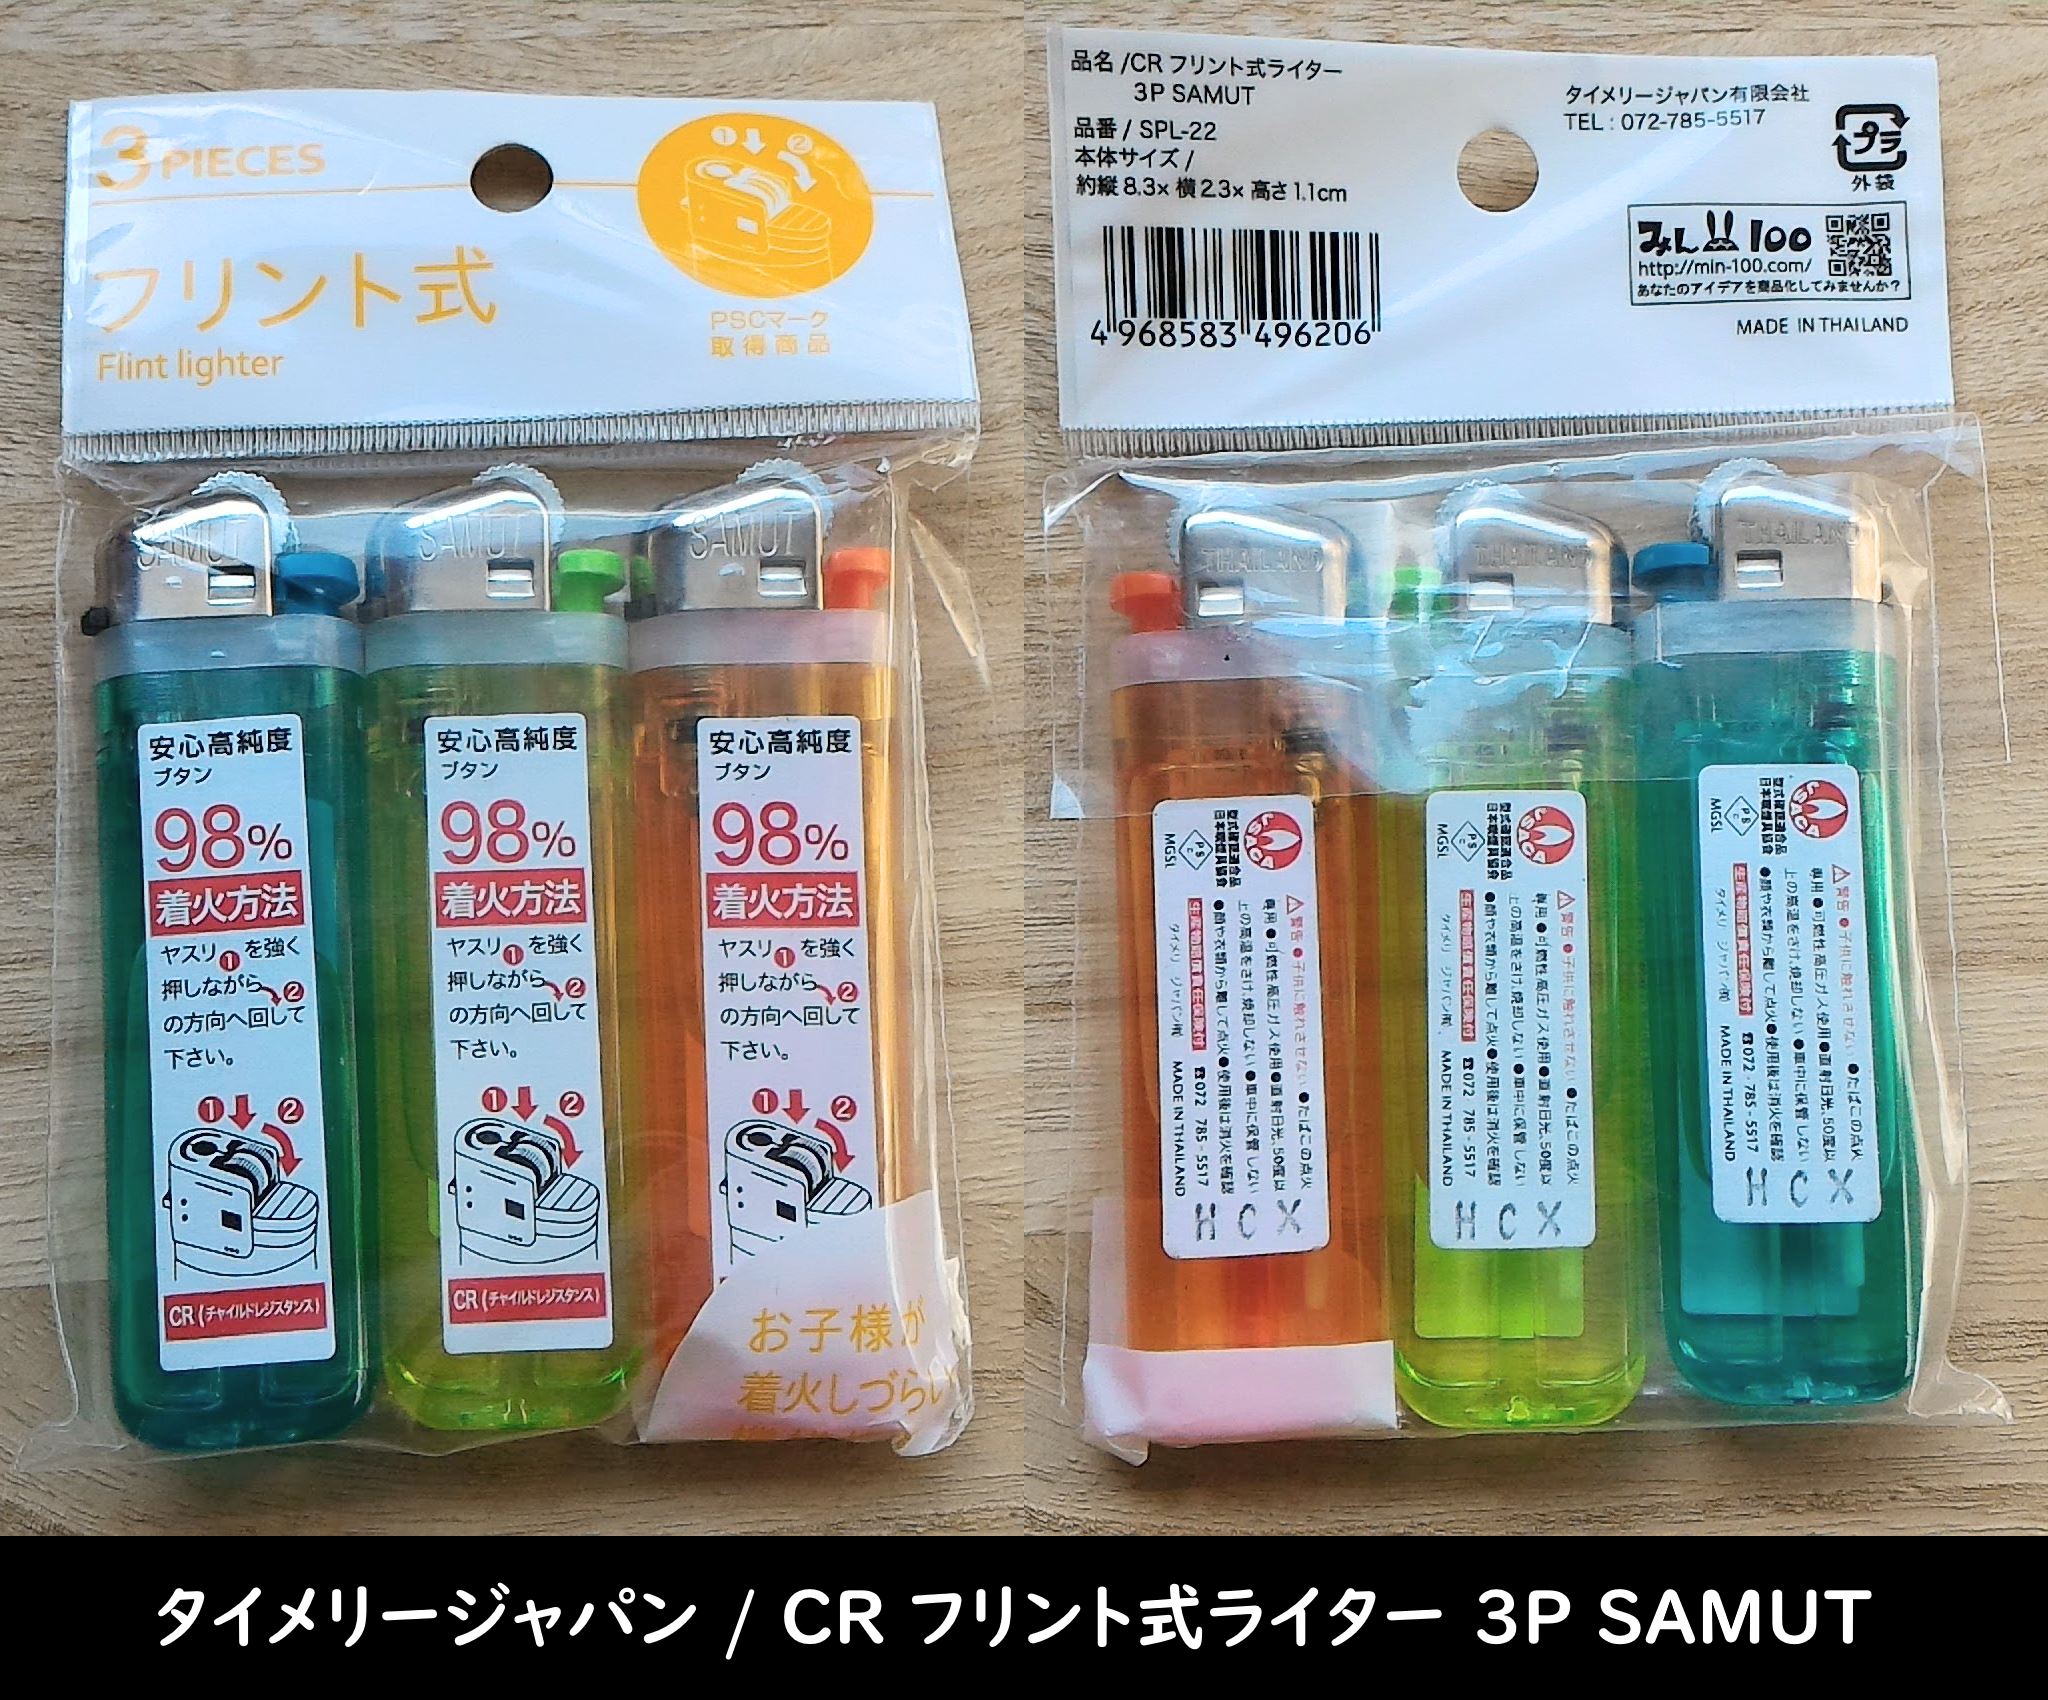 タイメリージャパン / CR フリント式ライター 3P SAMUT のパッケージ